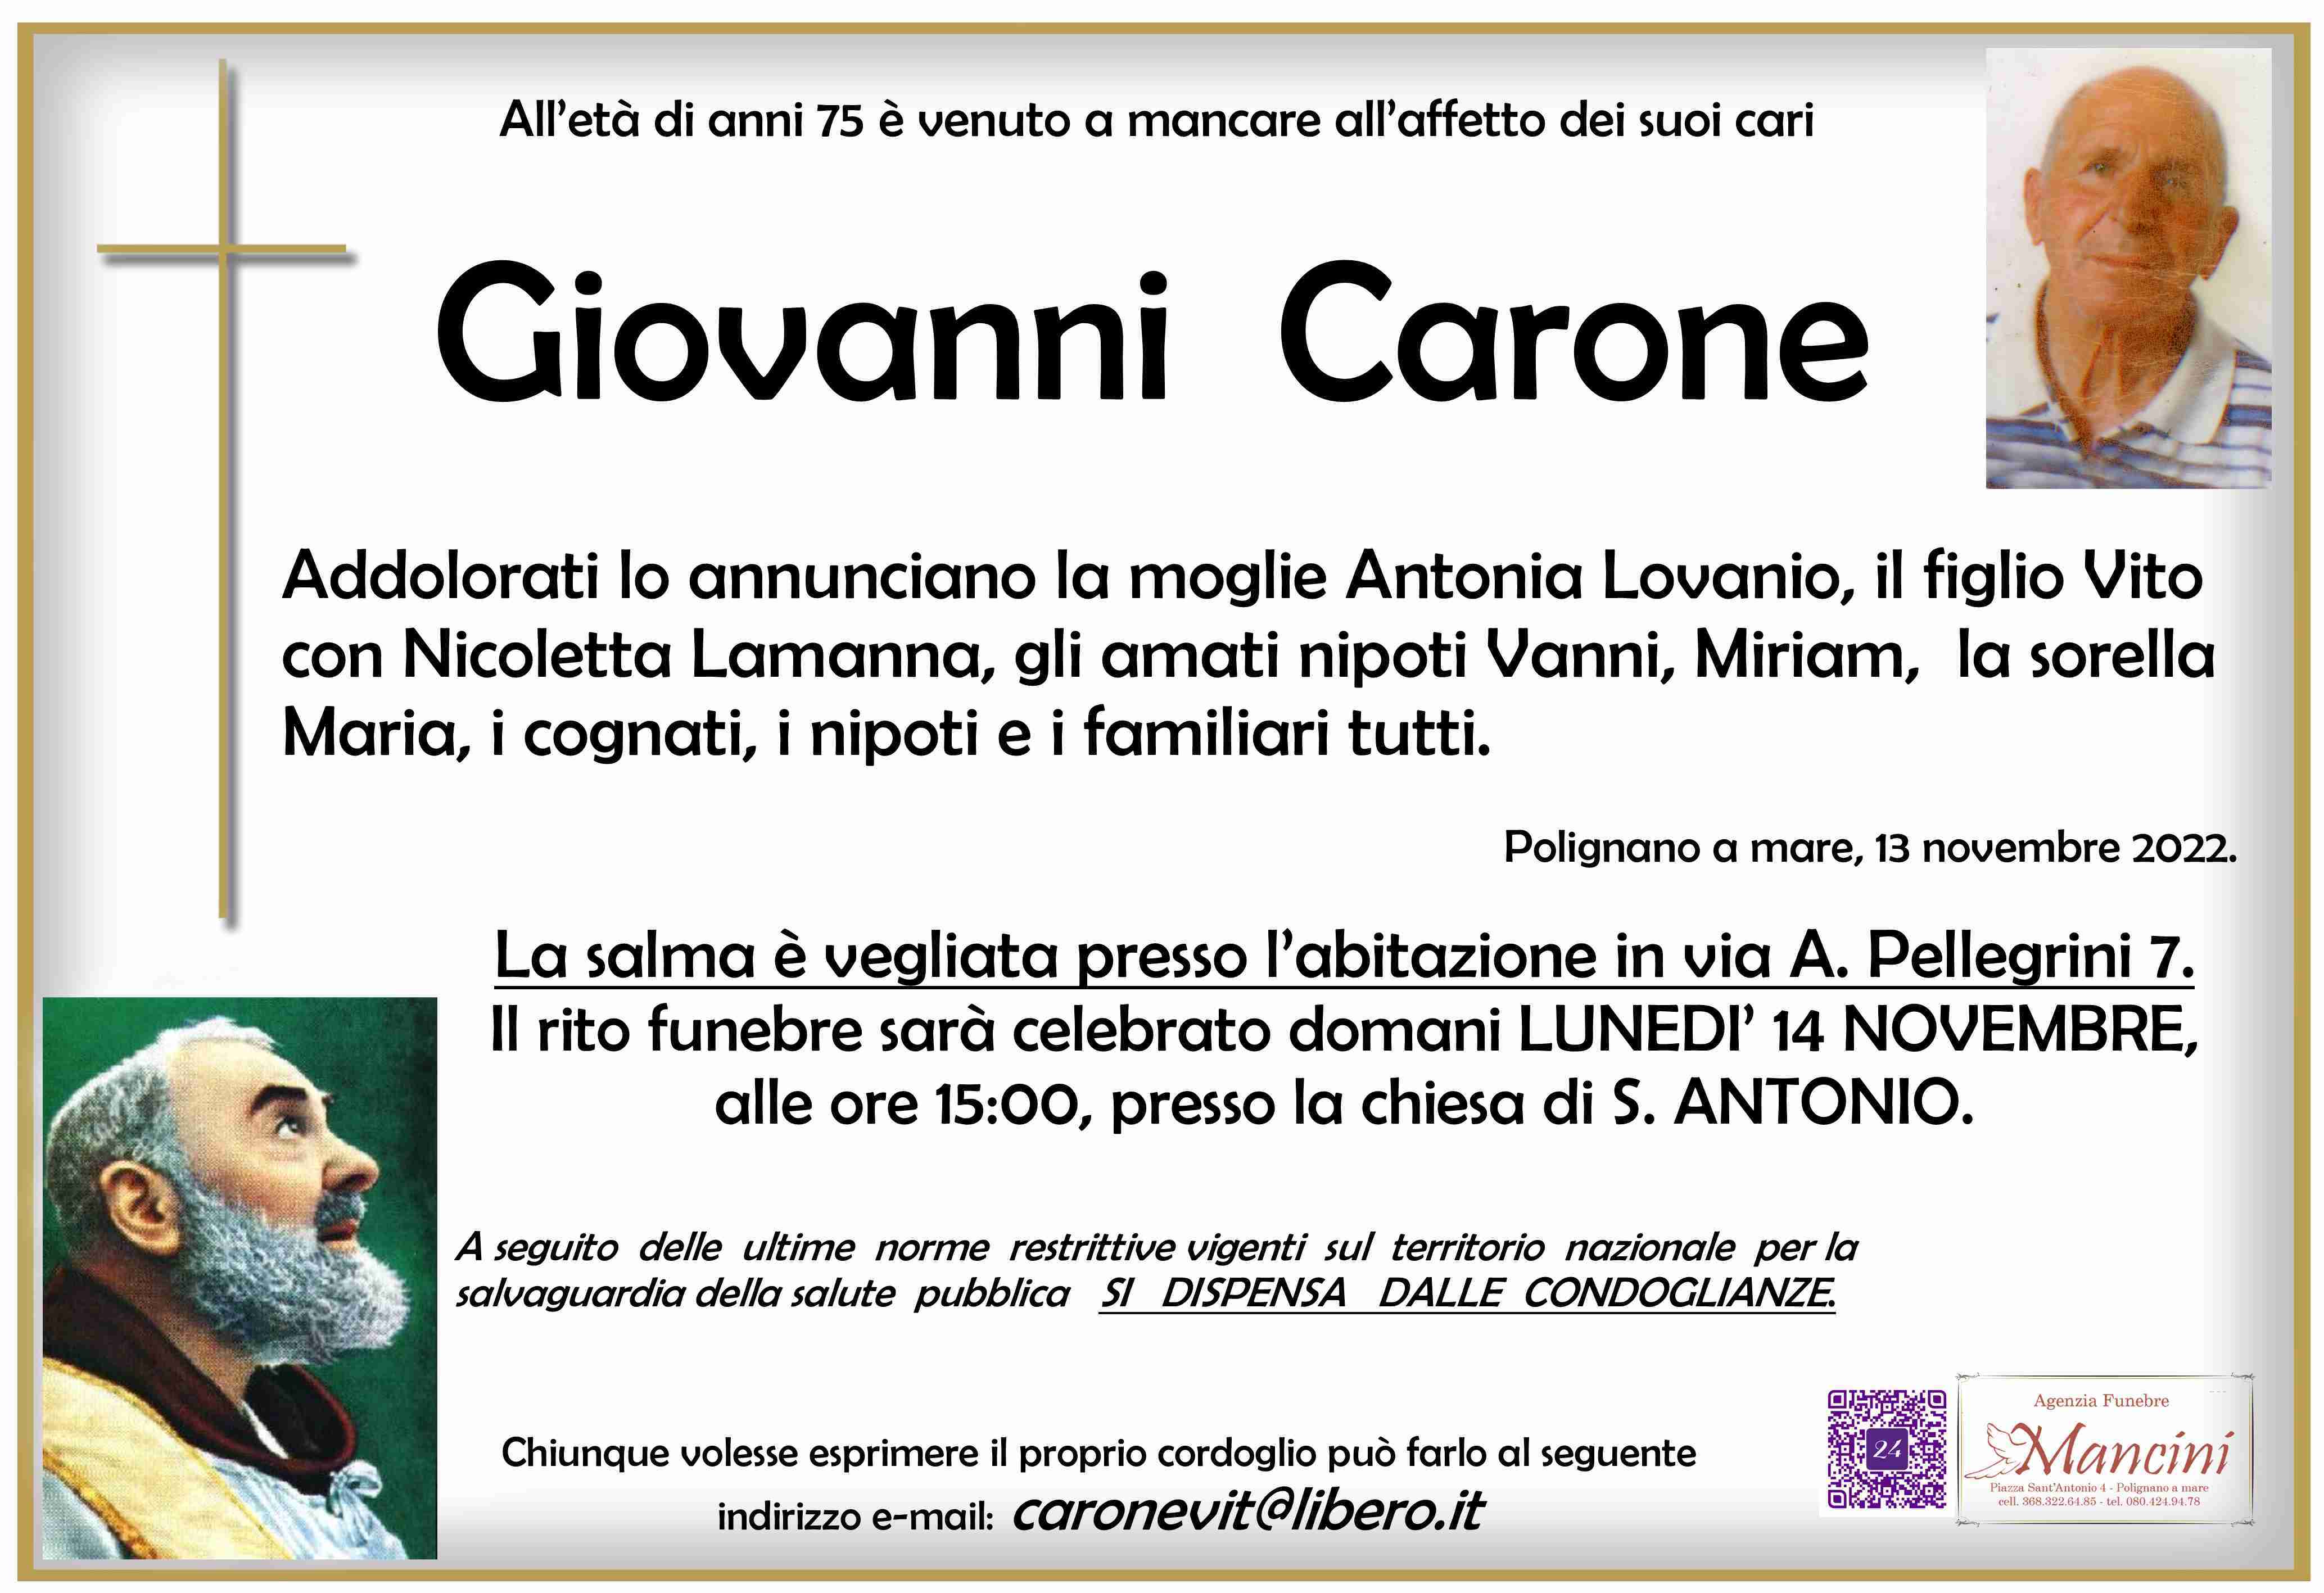 Giovanni Carone